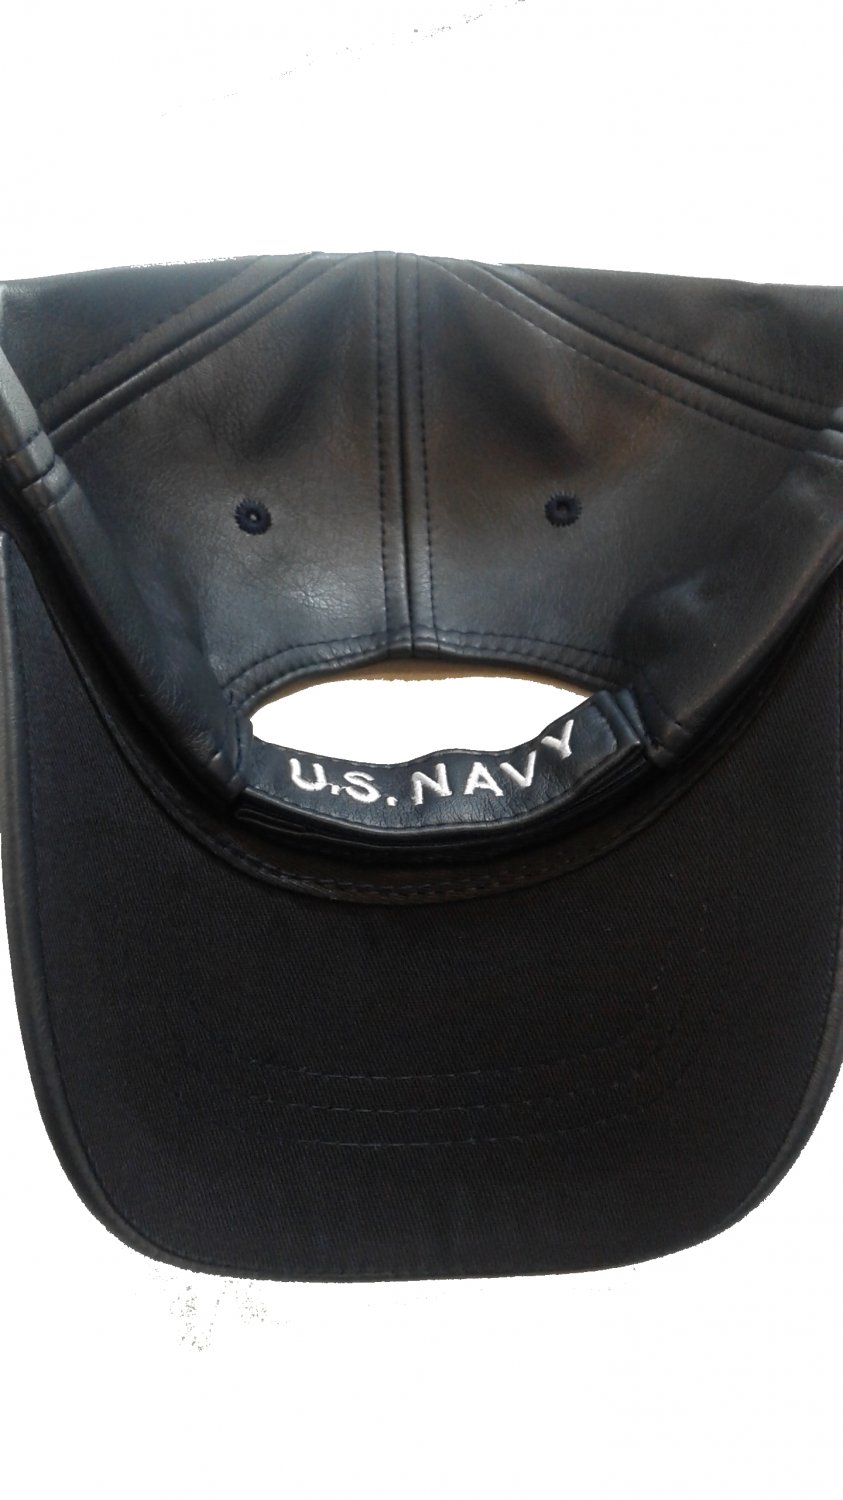 world war 2 navy veteran cap